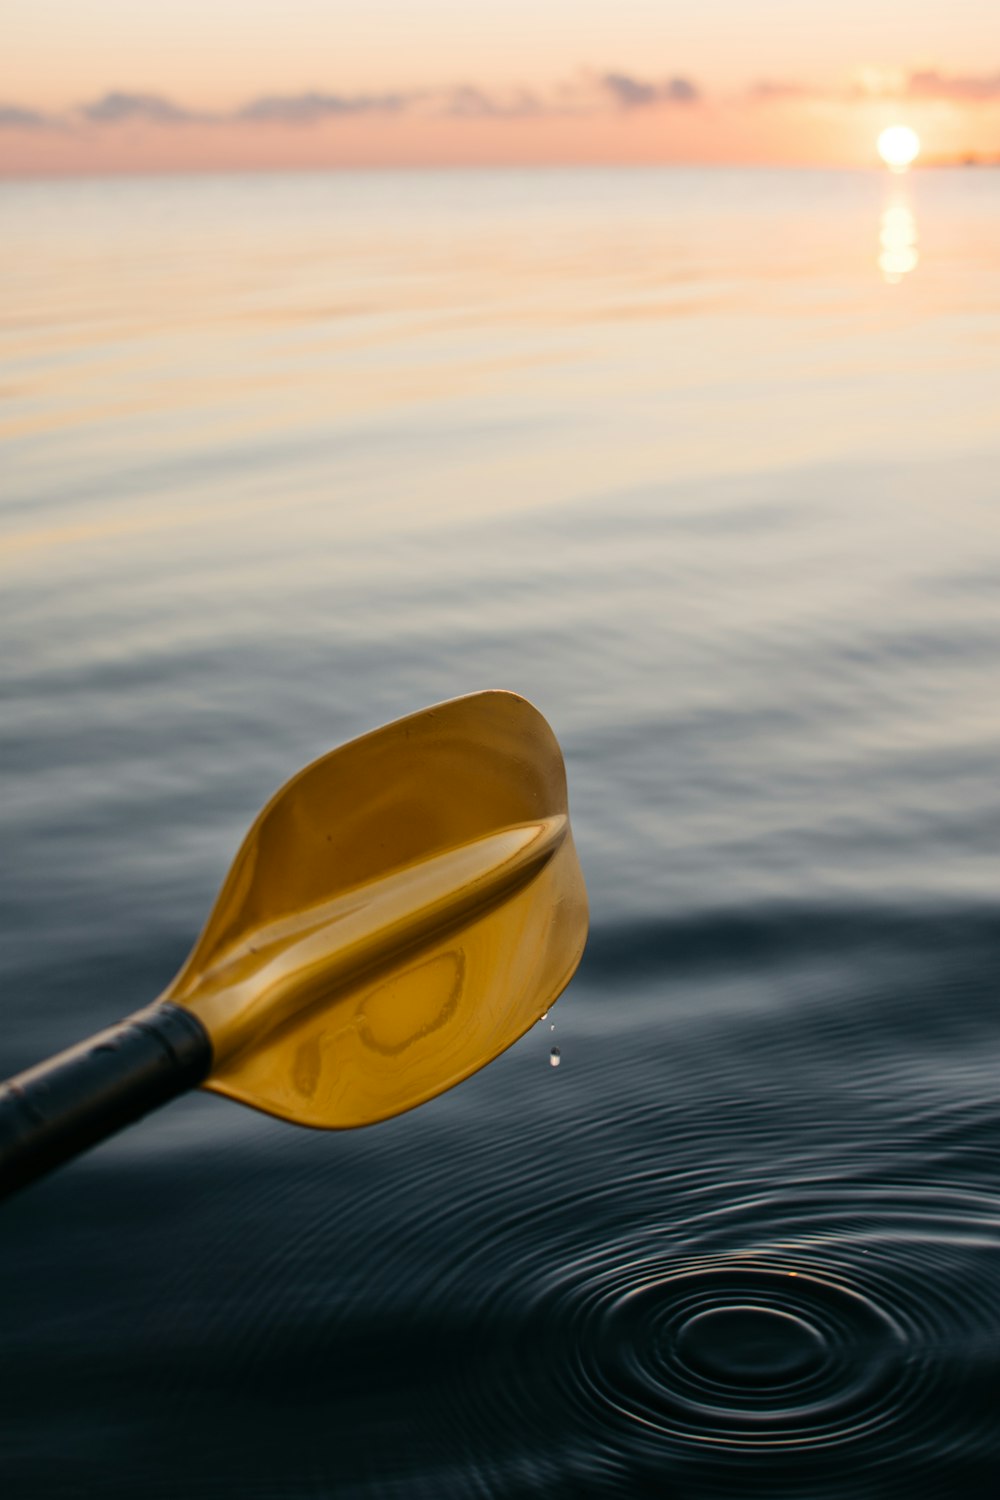 remo de barco de color dorado sobre el agua del mar durante la hora dorada